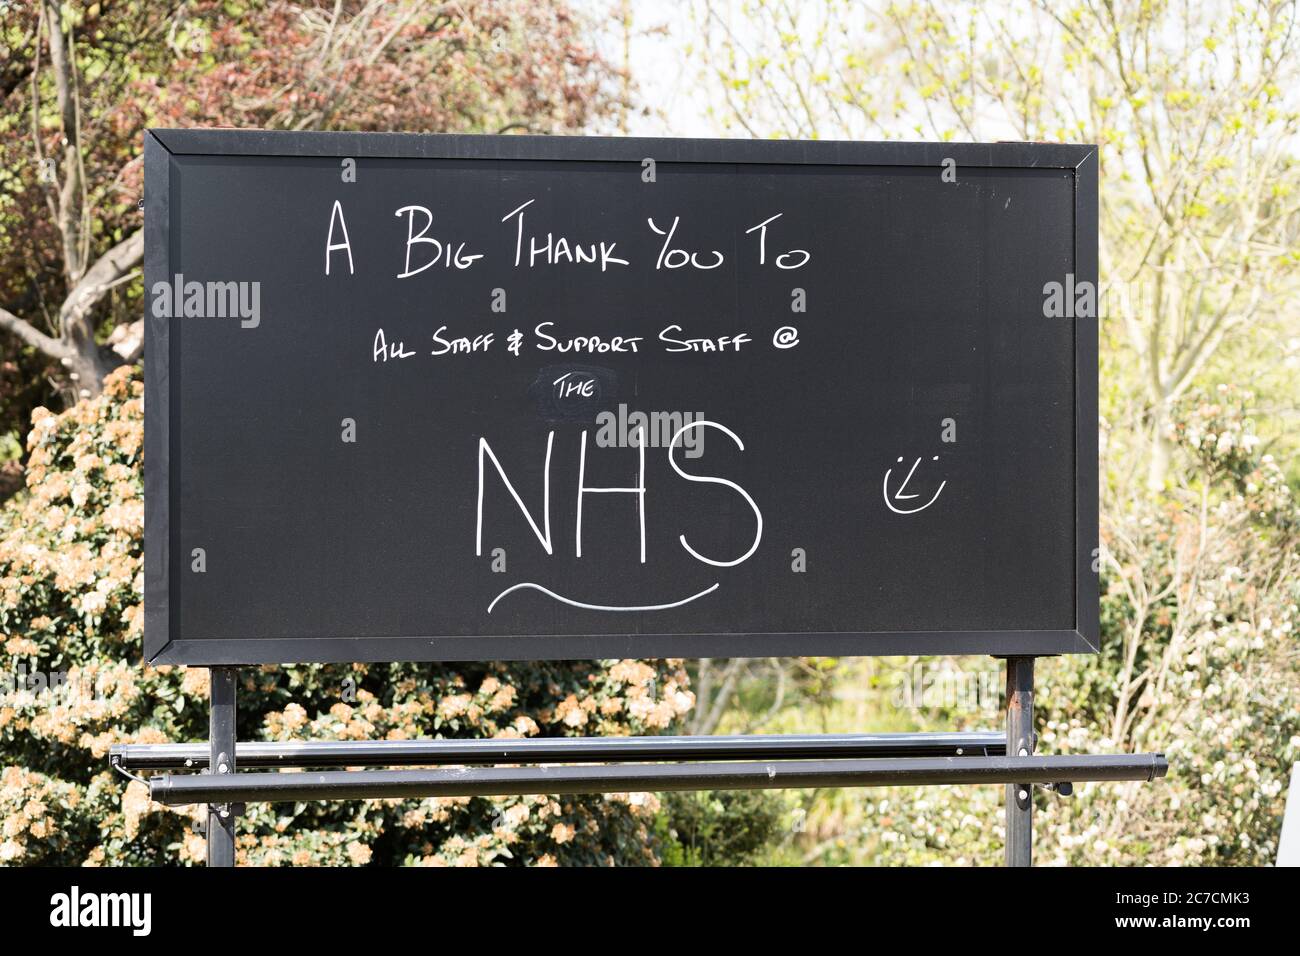 Londra, UK - Aprile 12 2020: Bel segno nero con lettere bianche che dicono' UN grande ringraziamento a NHS' durante il blocco del coronavirus Foto Stock